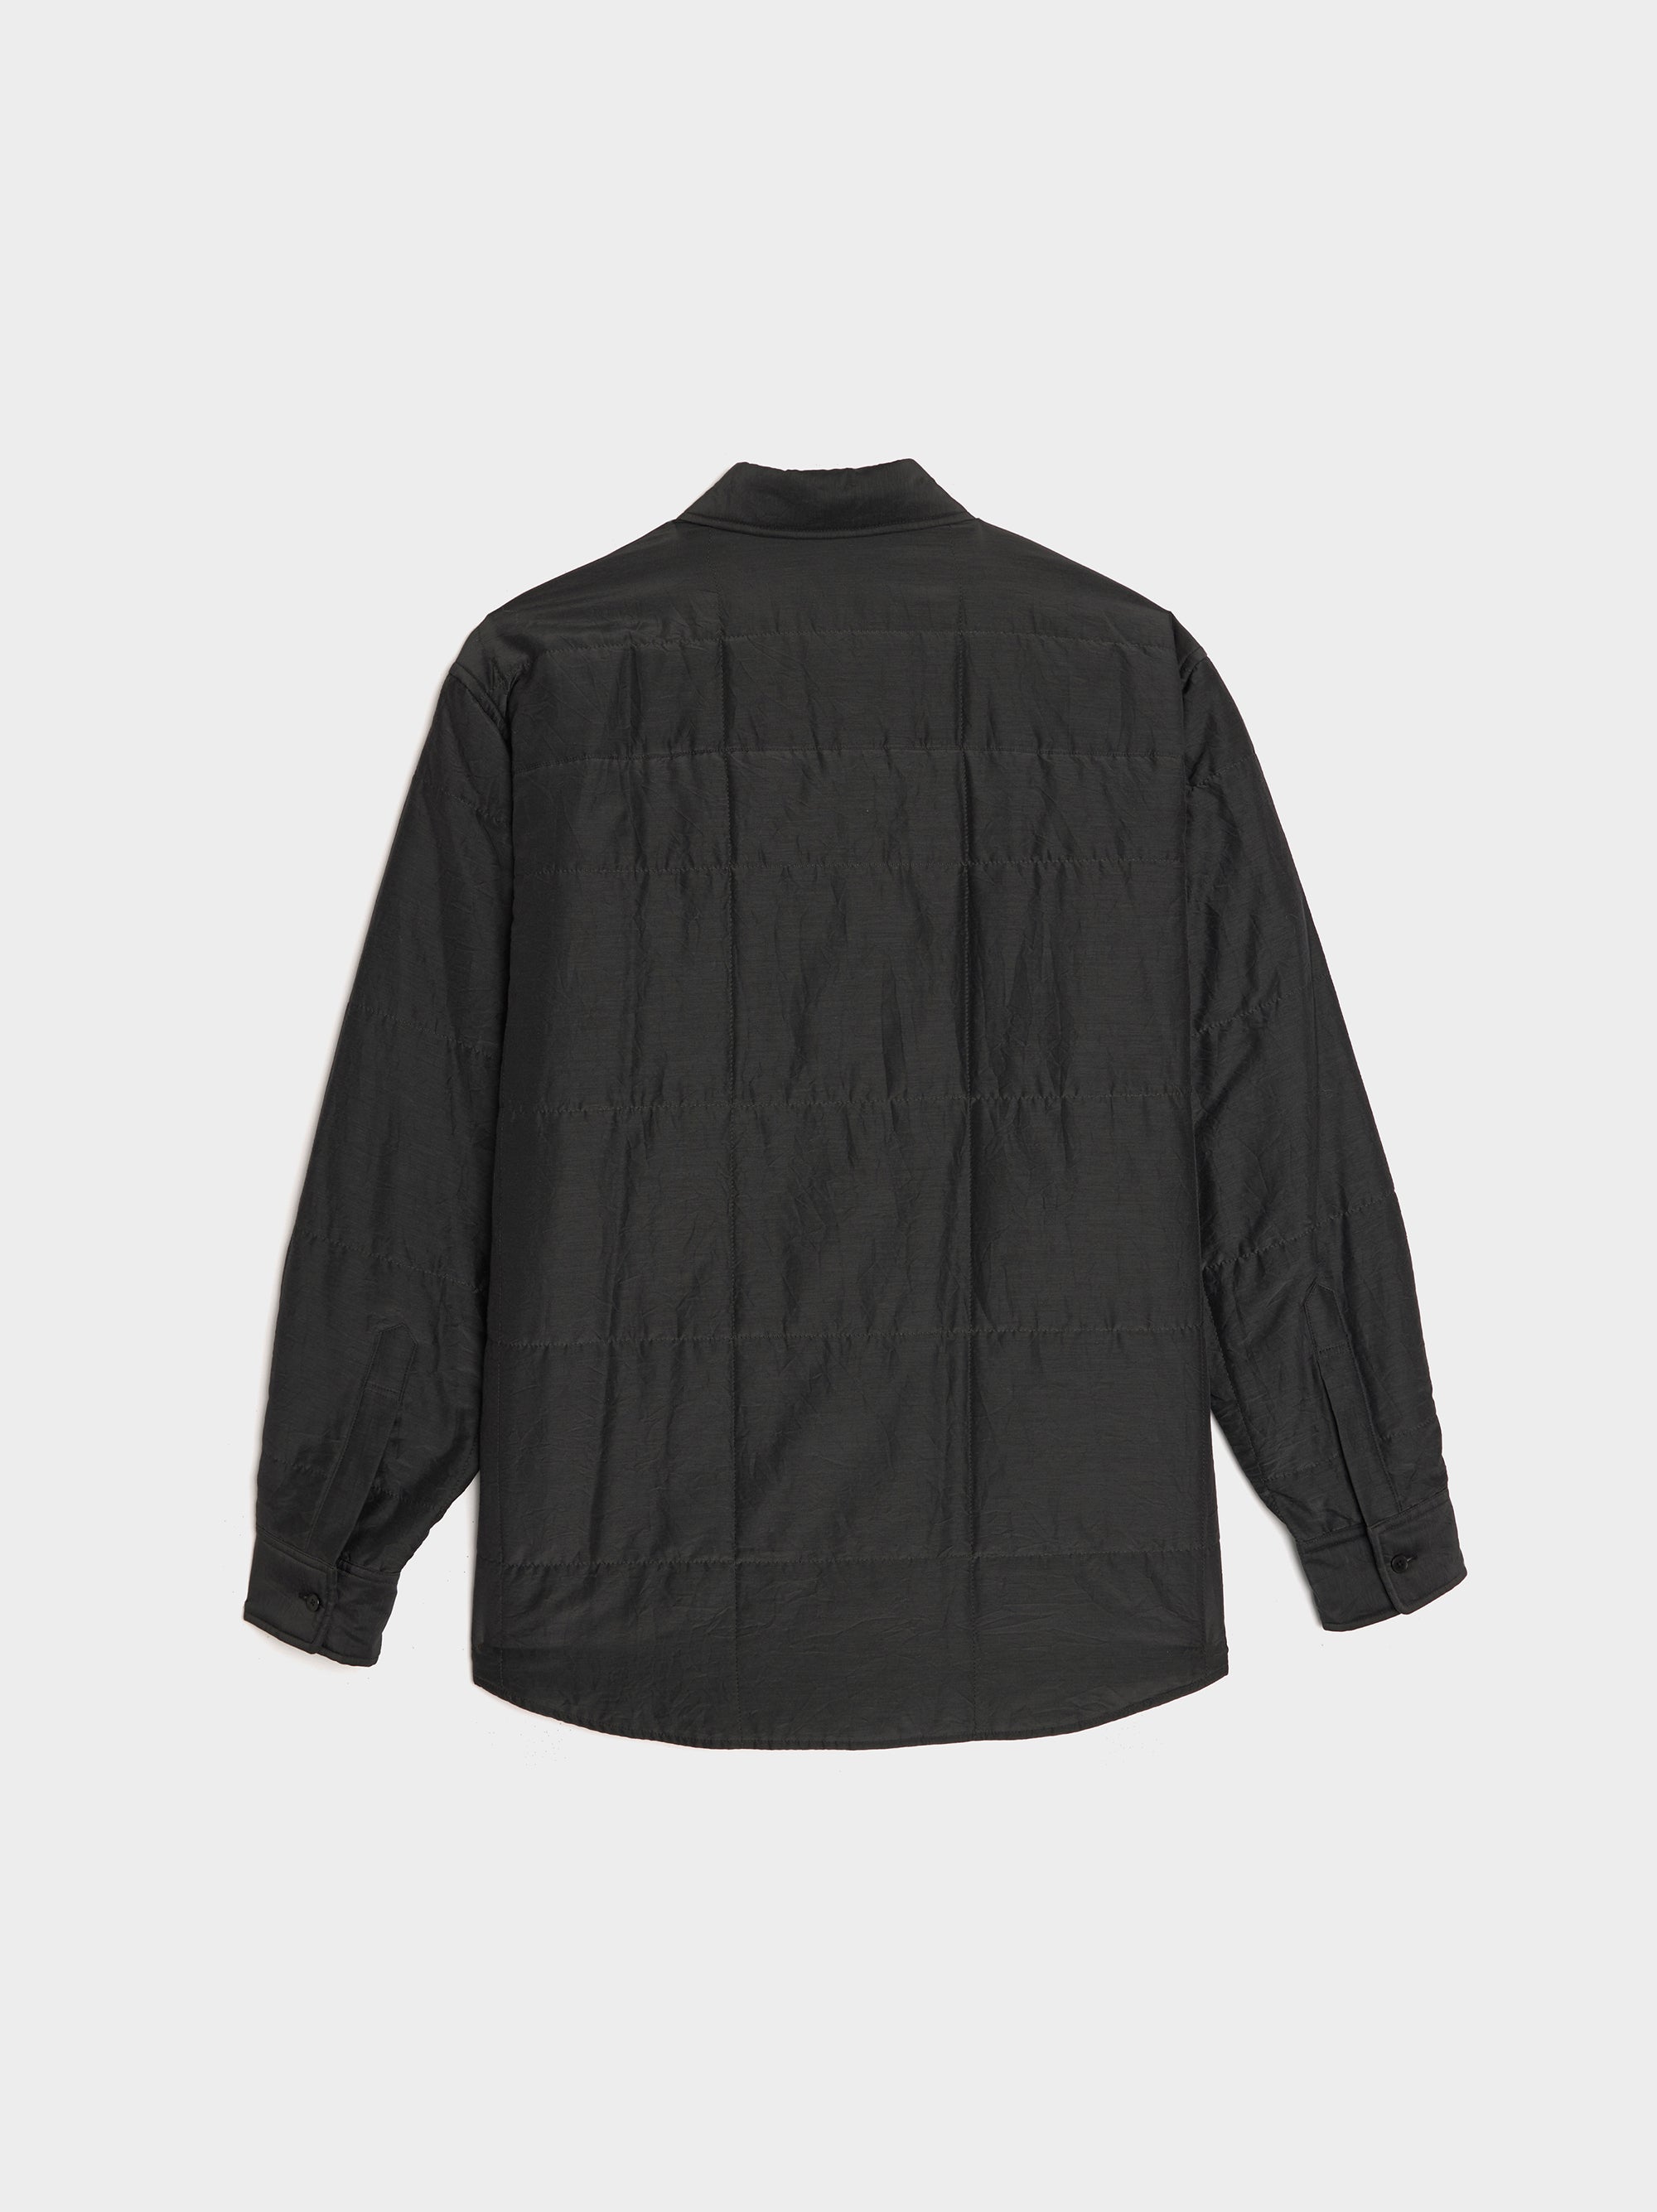 rennes — Auralee  Quilted Light Silk Cotton Shirt in Ink